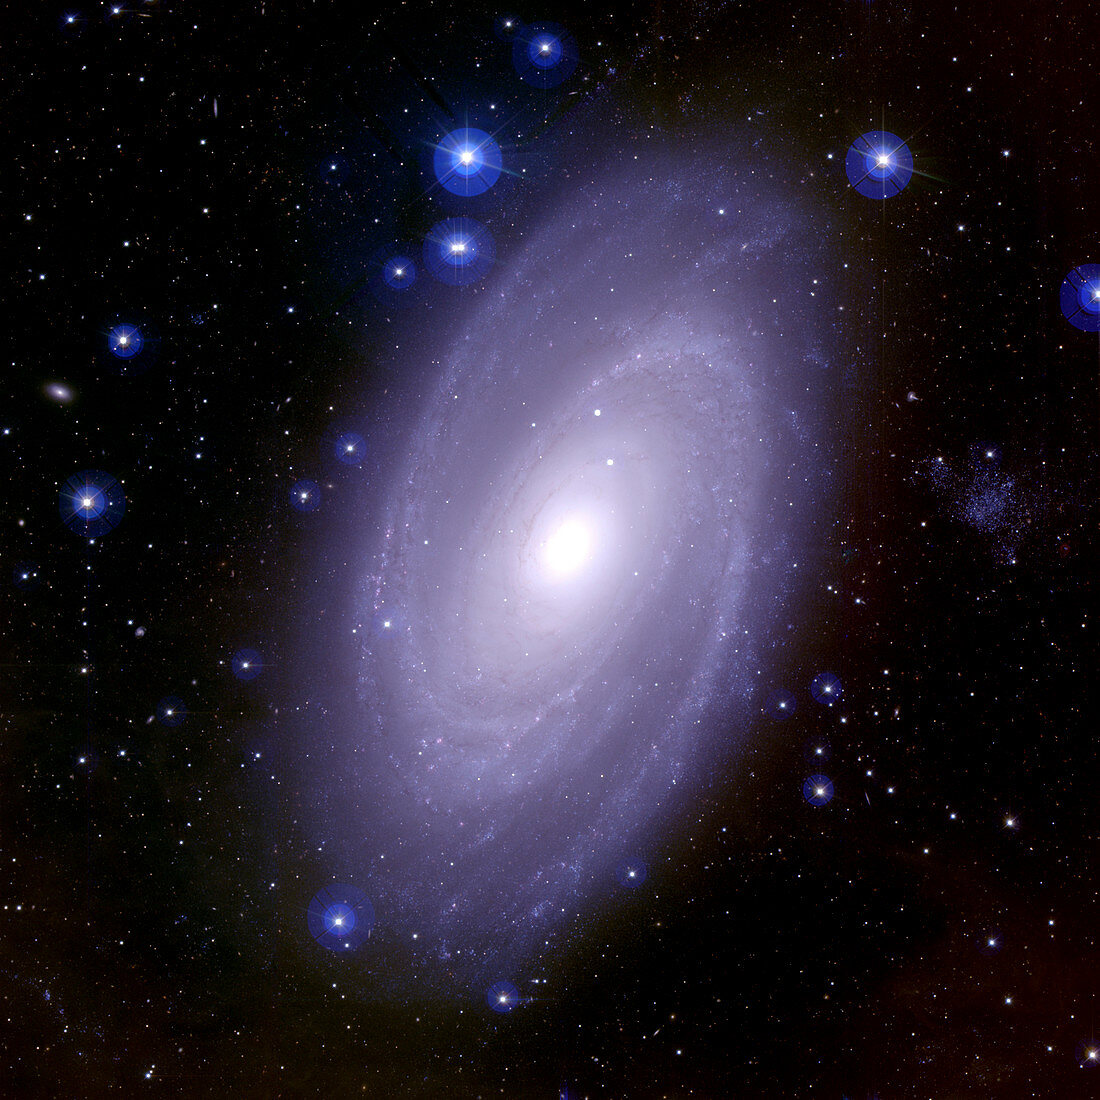 Spiral galaxy M81